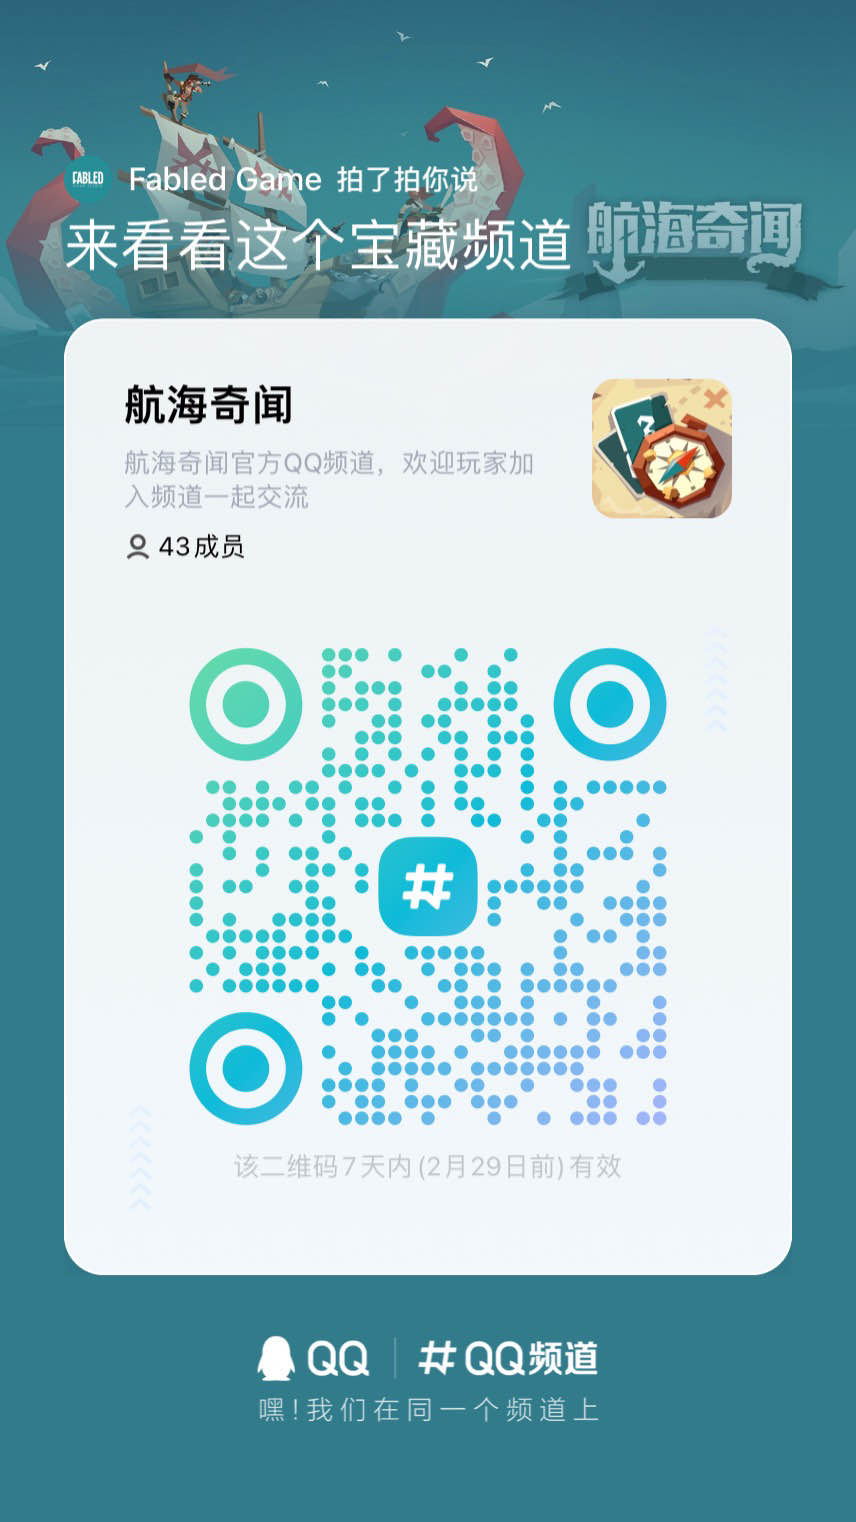 【航海奇闻】官方QQ频道已开放